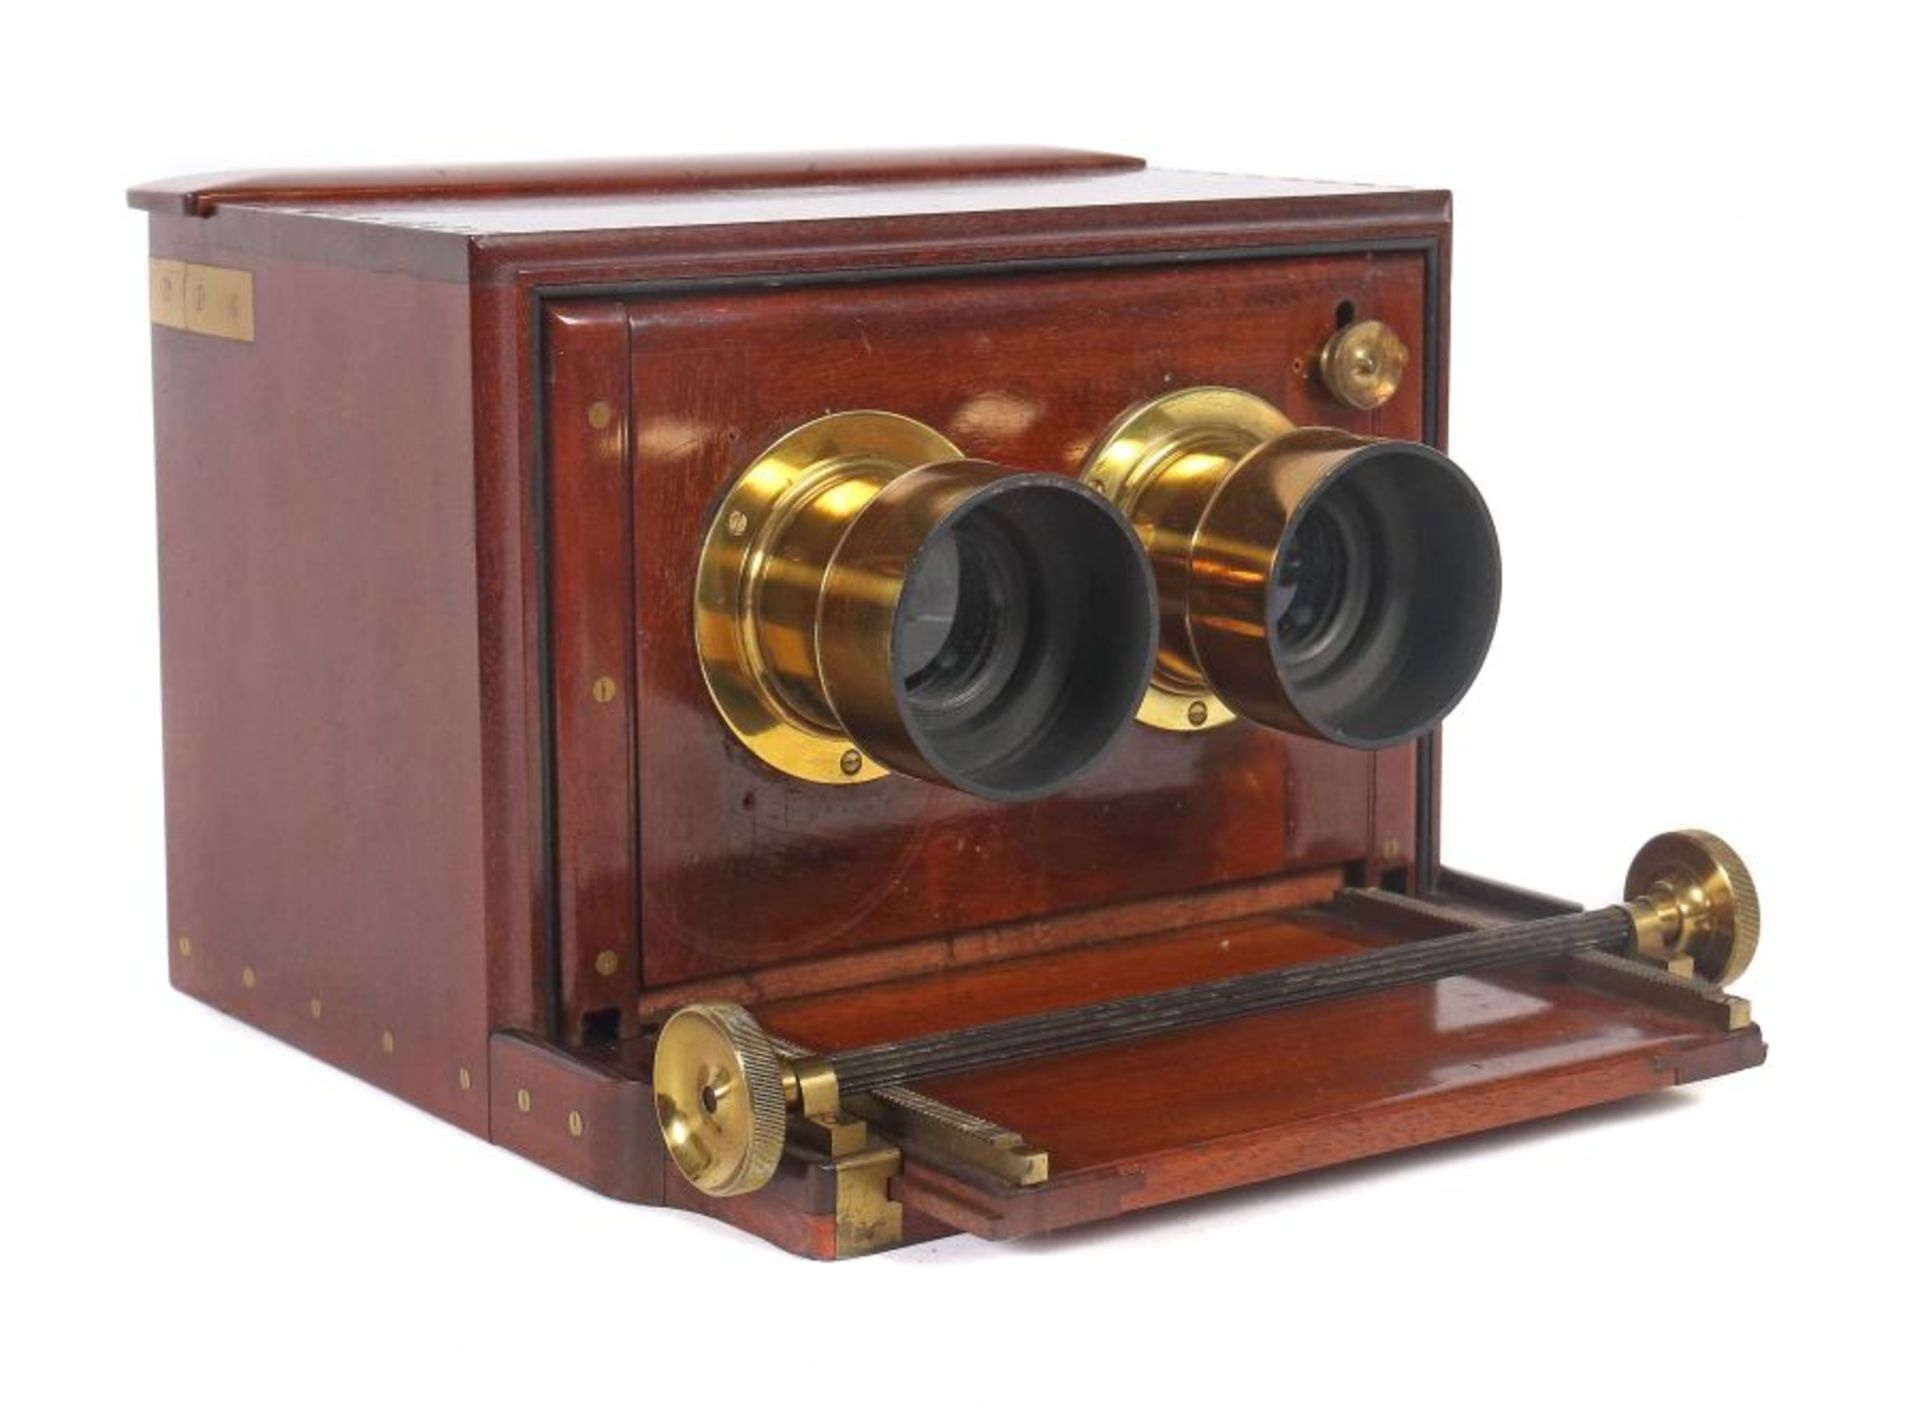 Seltene Schiebekasten-StereokameraJ. H. Dallmeyer, London, um 1860/70, Mahaghonigehäuse mit